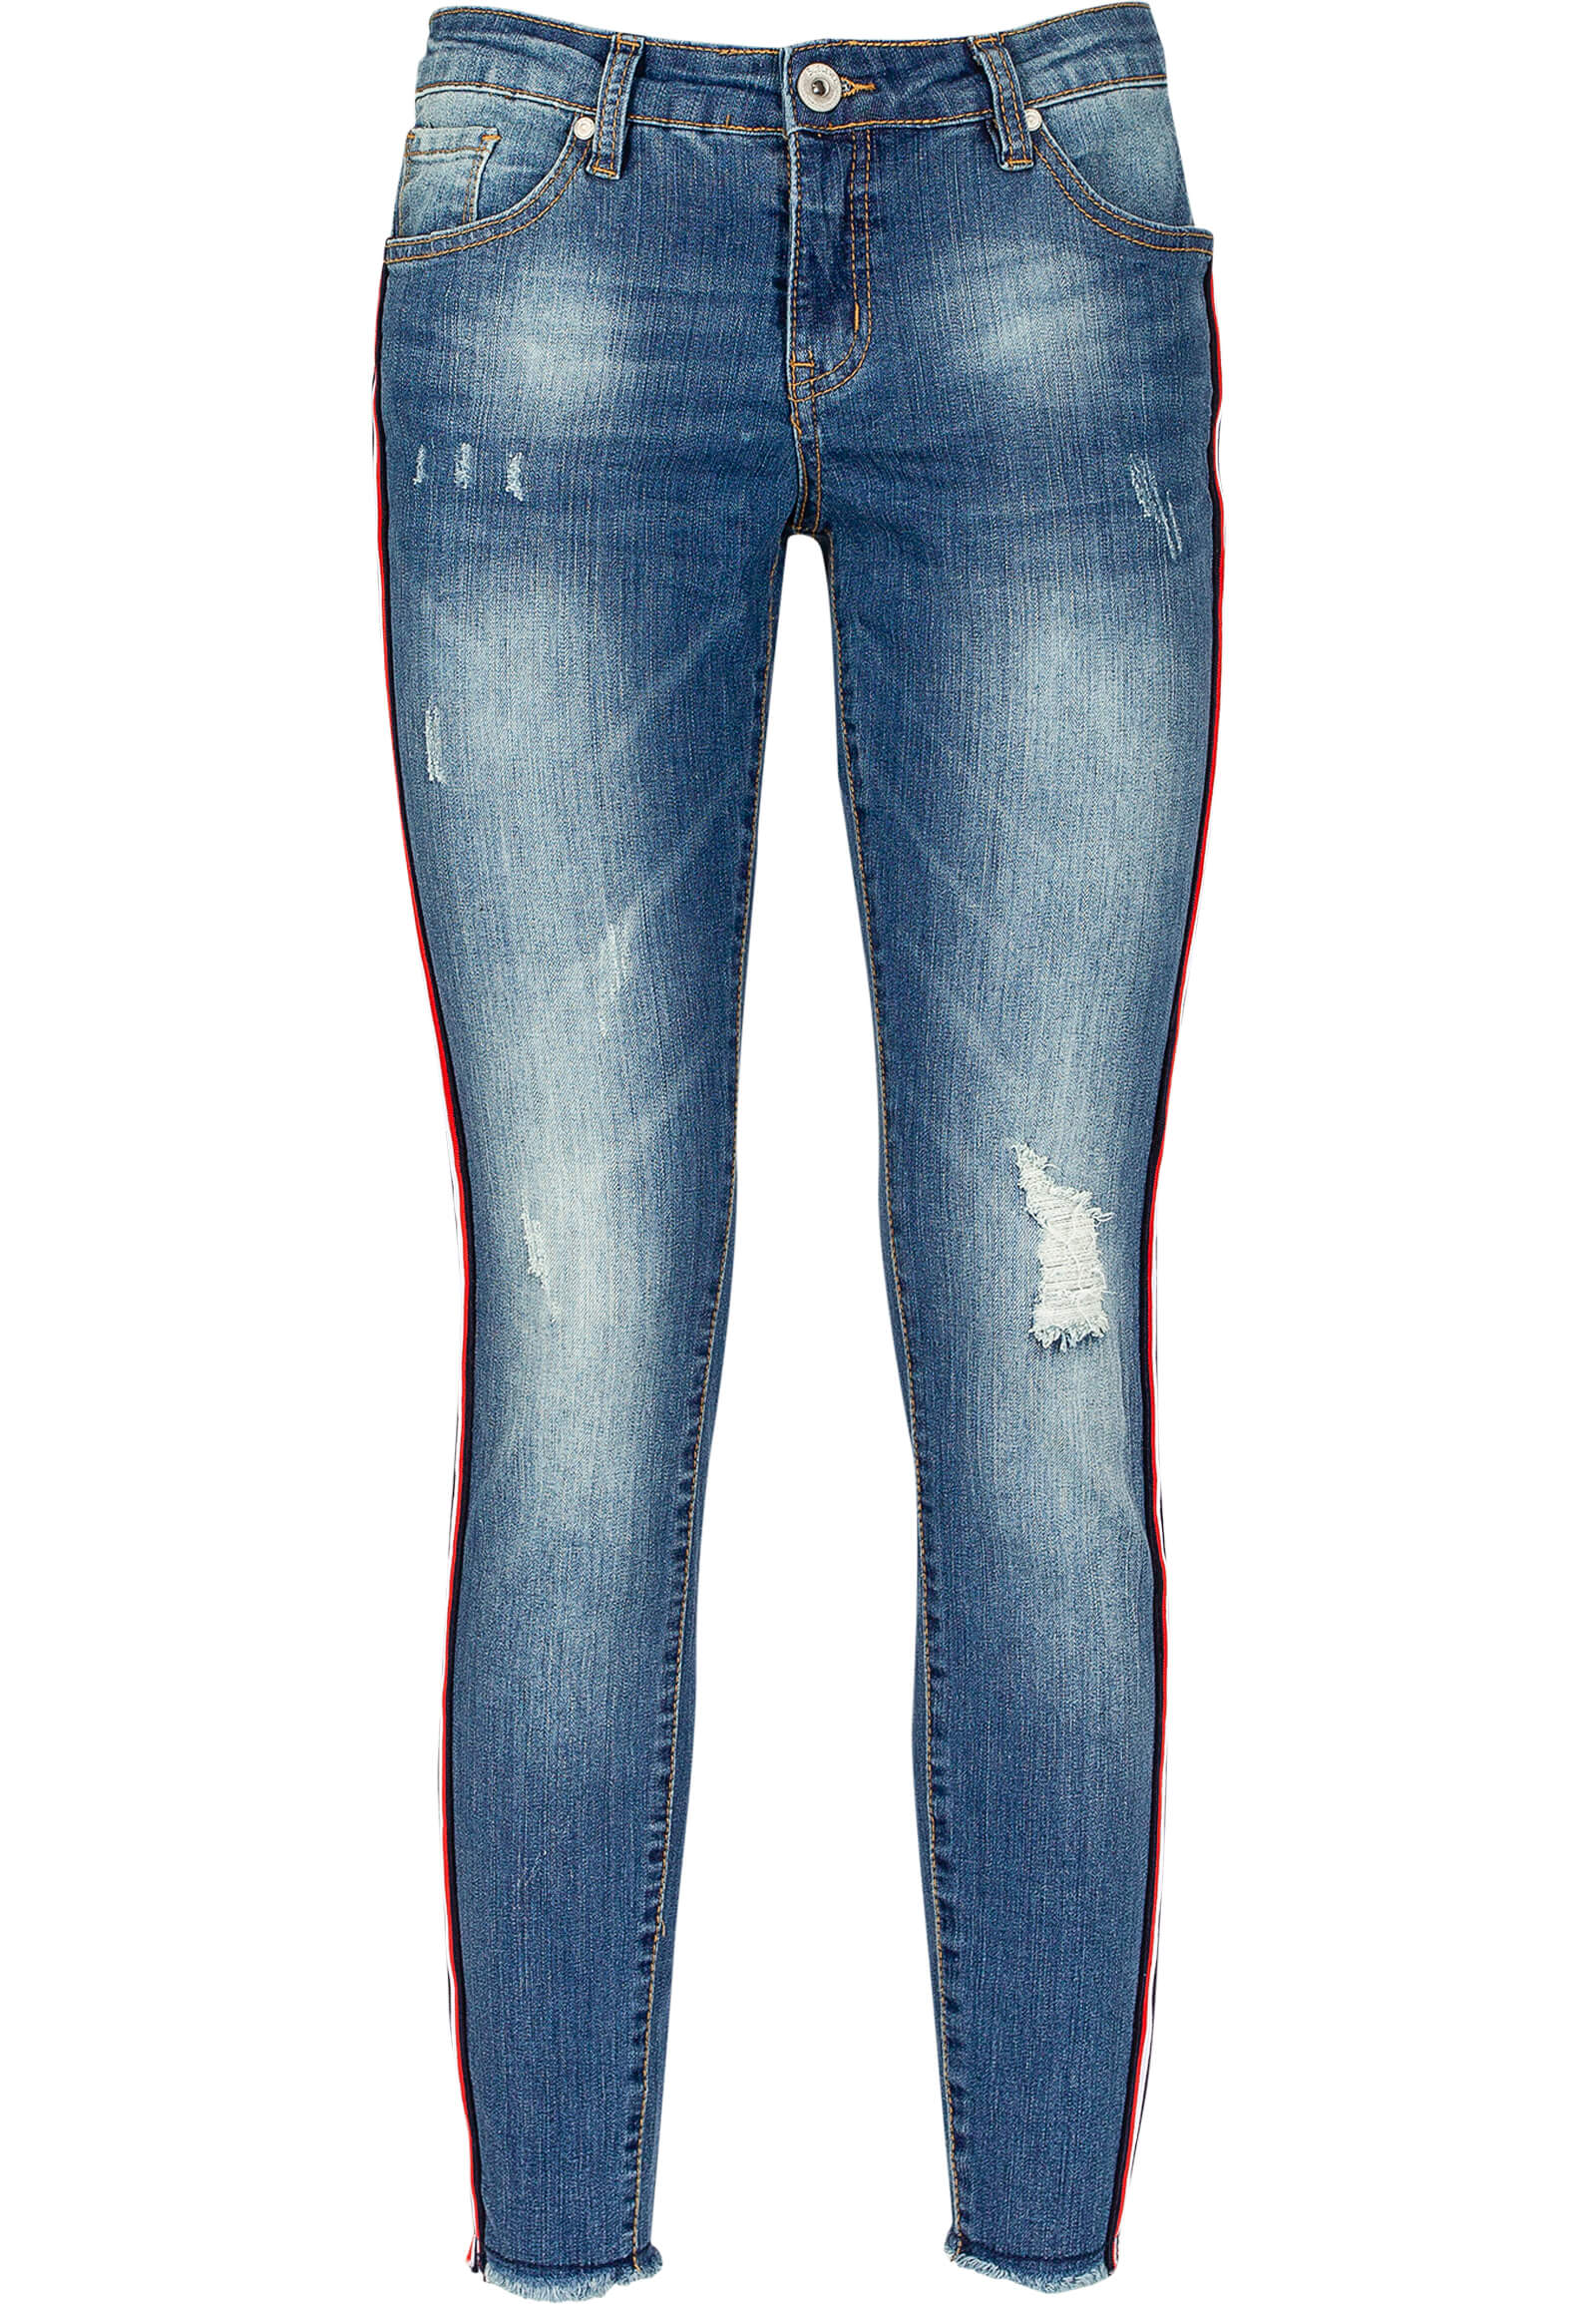 Jeans mit seitlichem Streifen